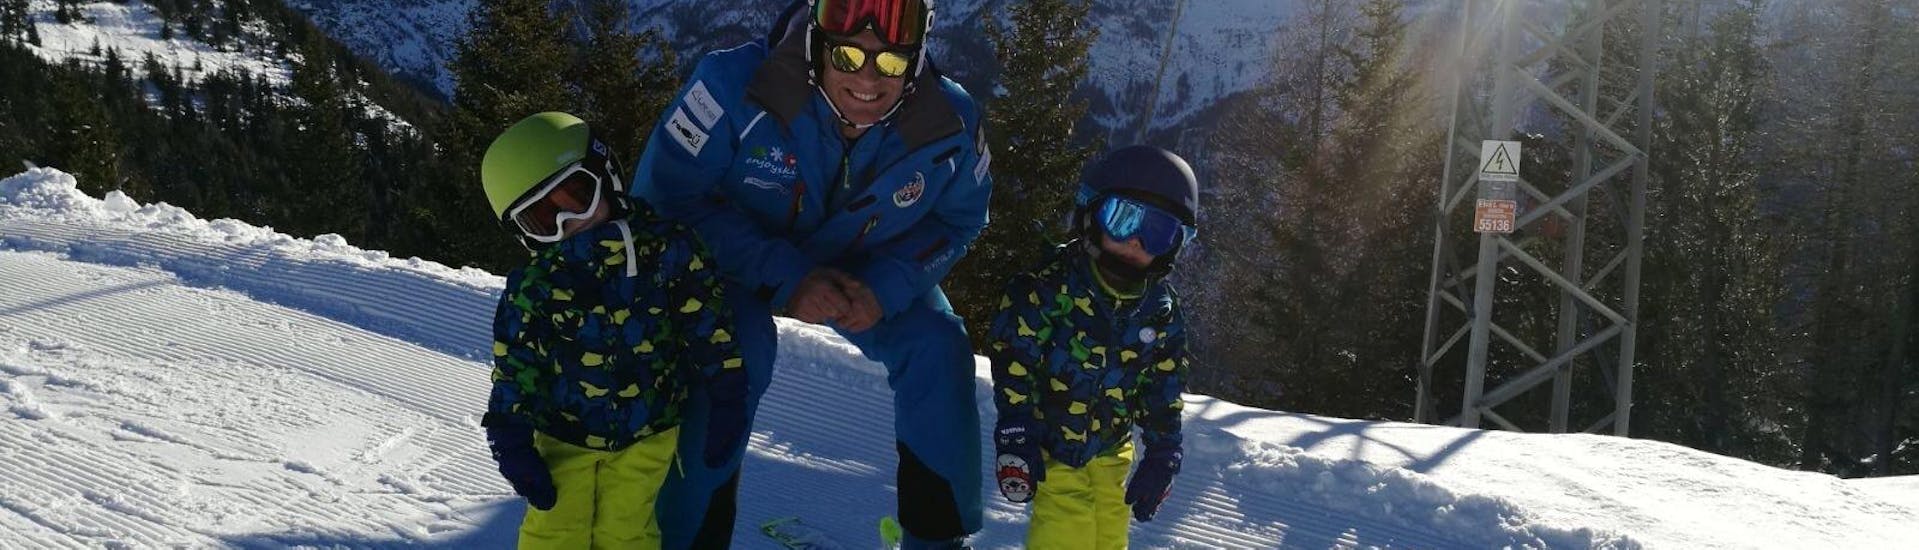 Der Skilehrer lächelt mit zwei Kindern während eines privaten Skikurses für Kinder der Enjoyski School Valmalenco - für alle Levels.